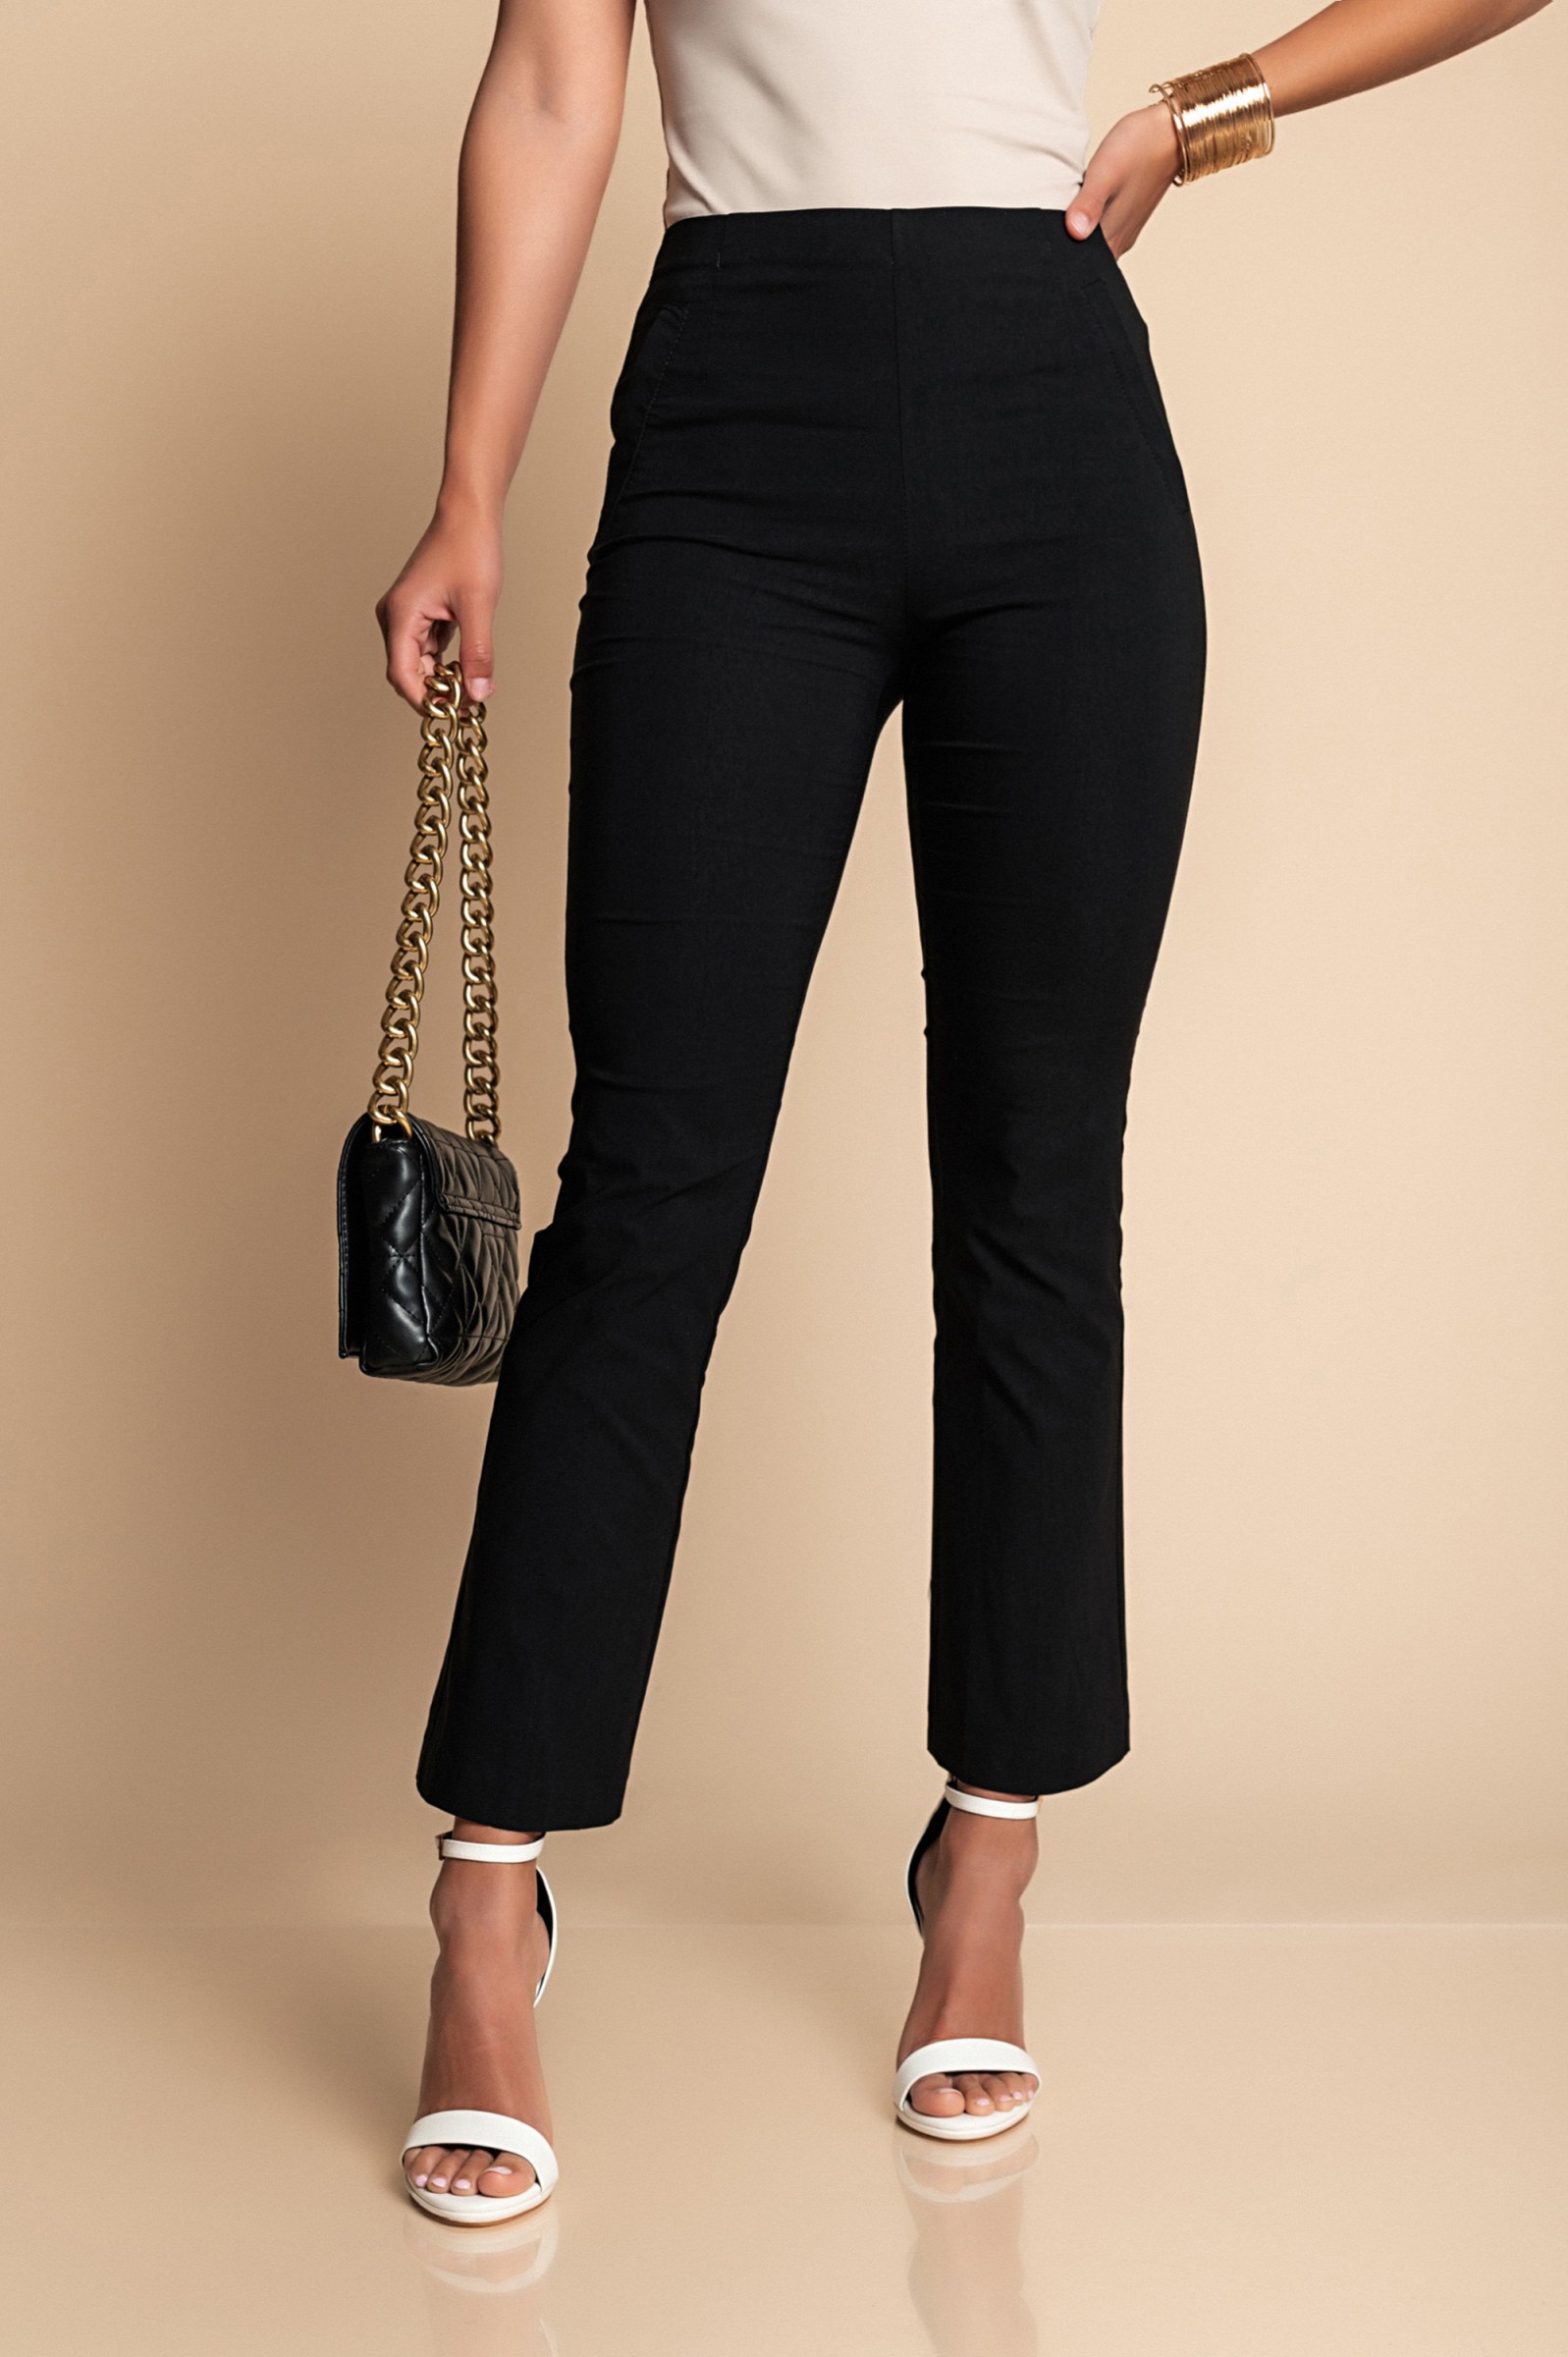 Pantalone lungo elegante con pantalone a zampa, nero --75%